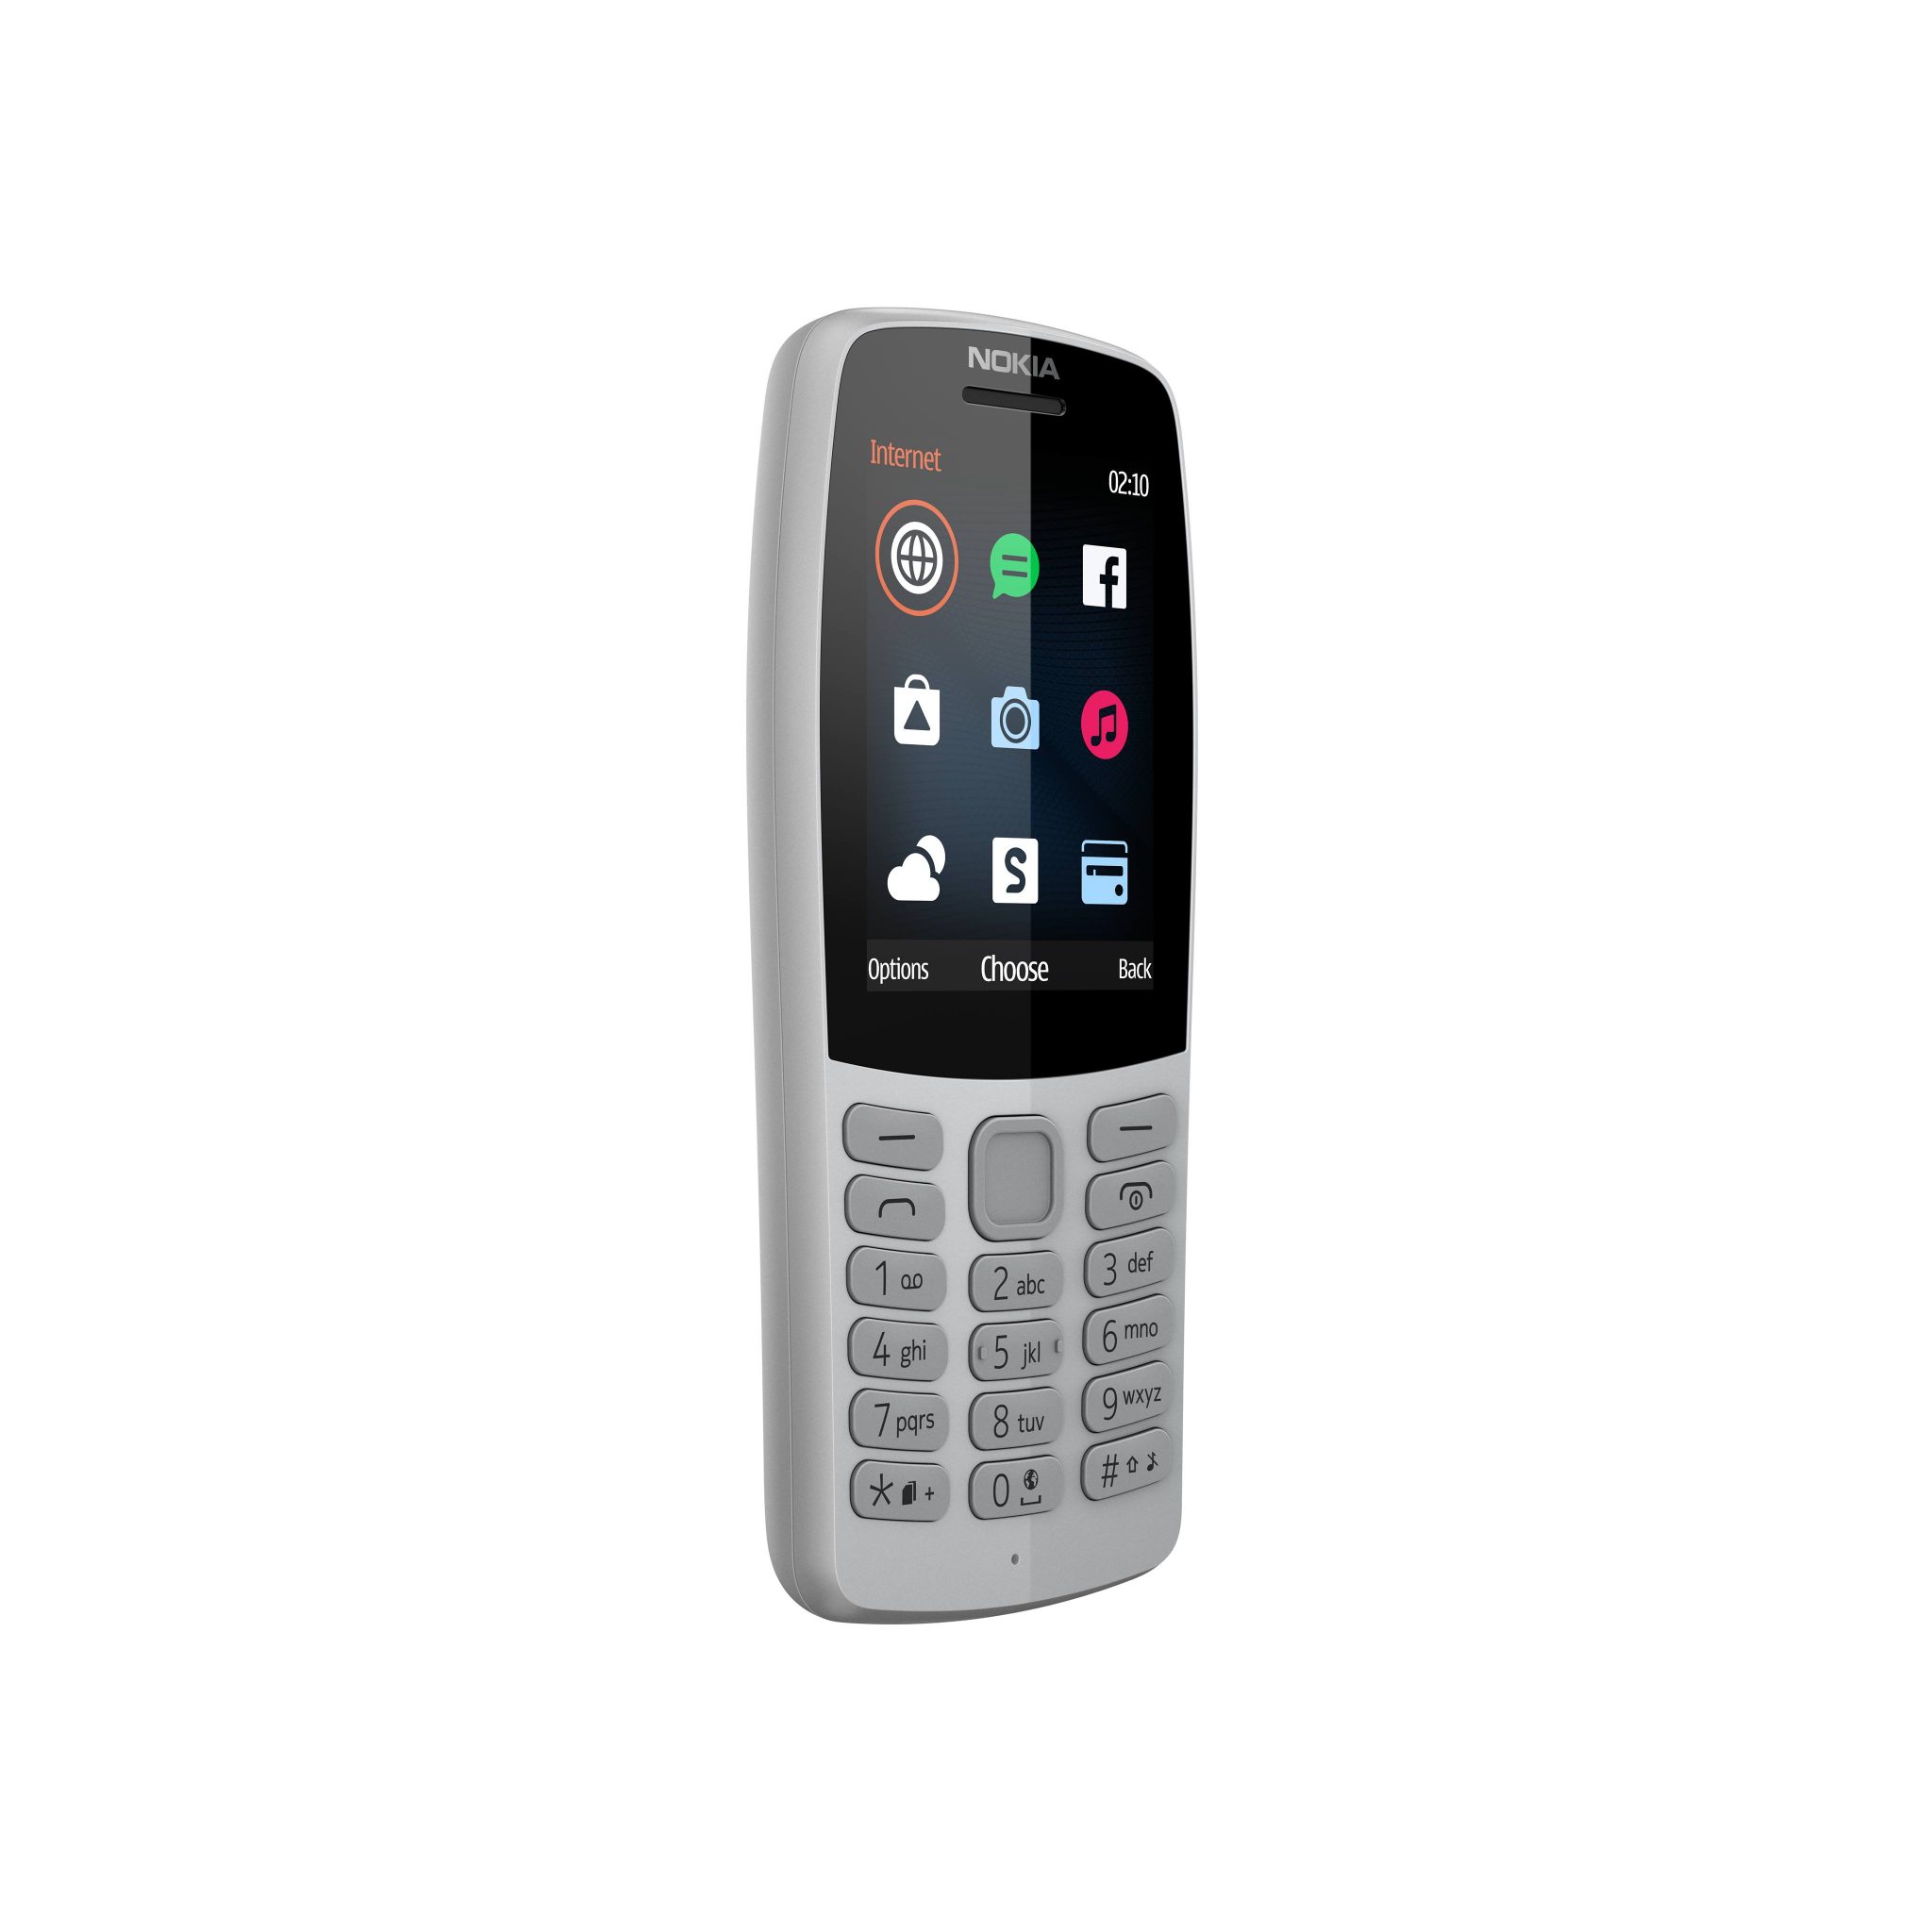 HMD Global giới thiệu Nokia 210 tại thị trường Việt Nam, pin 'trâu', nhiều màu sắc, giá 779 nghìn đồng